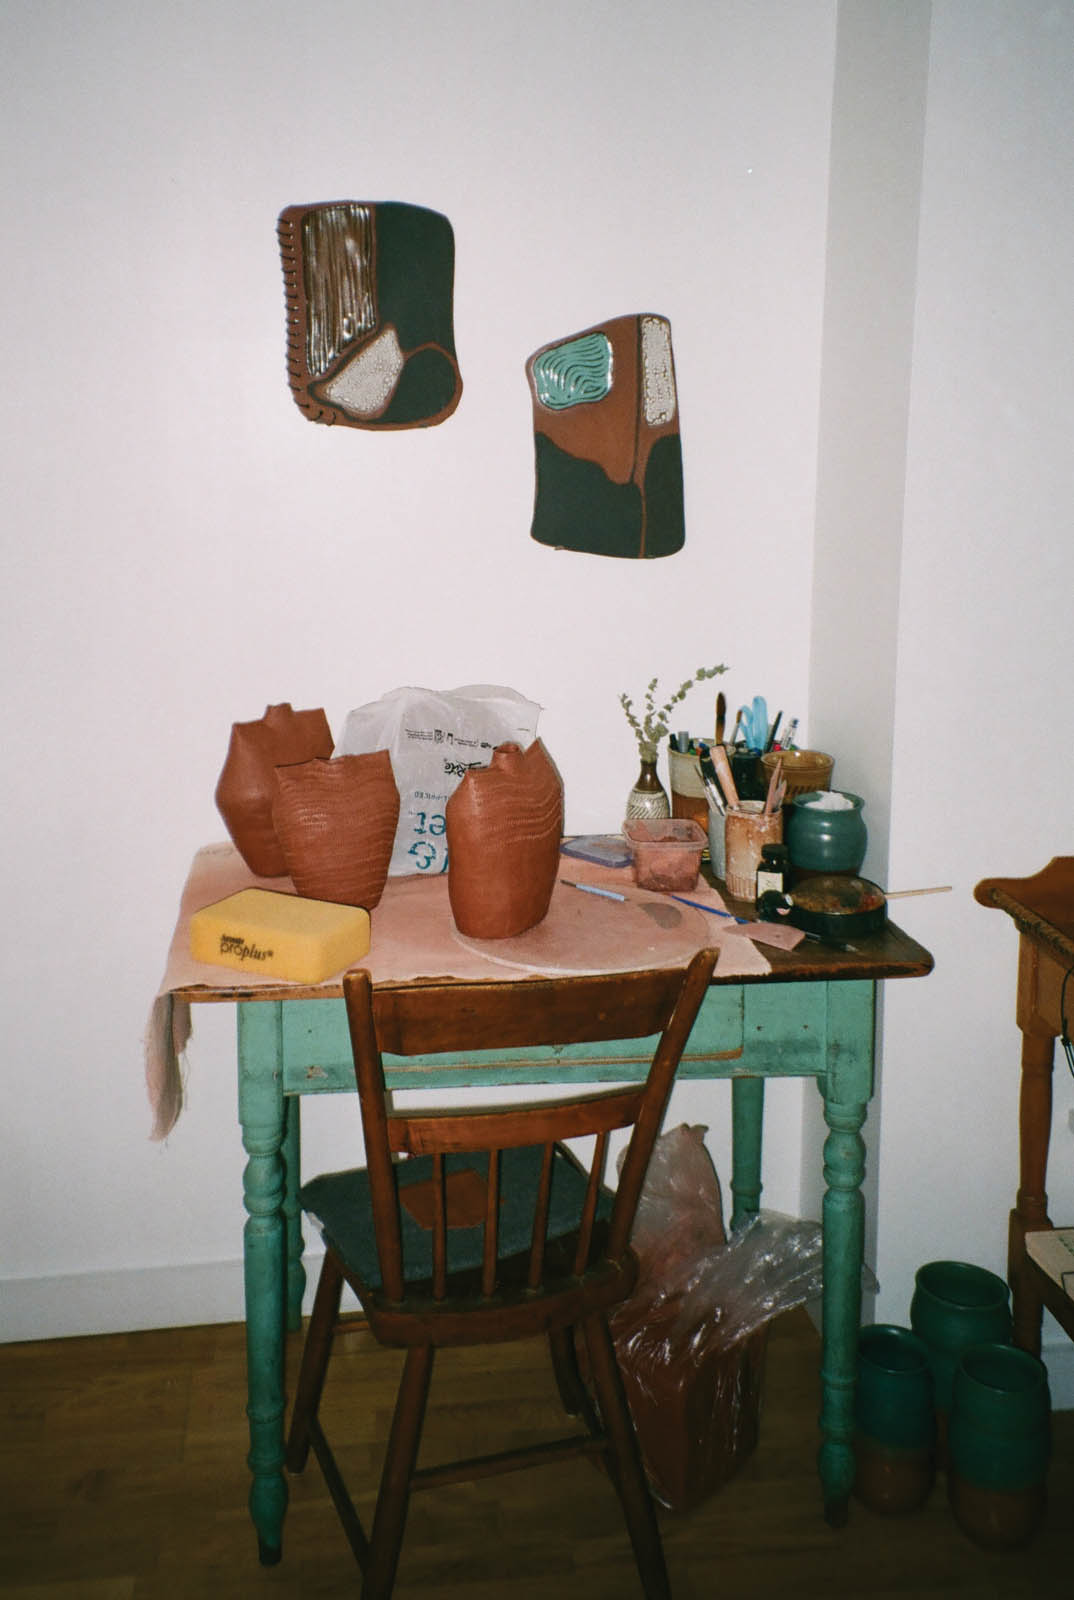 art desk with ceramics